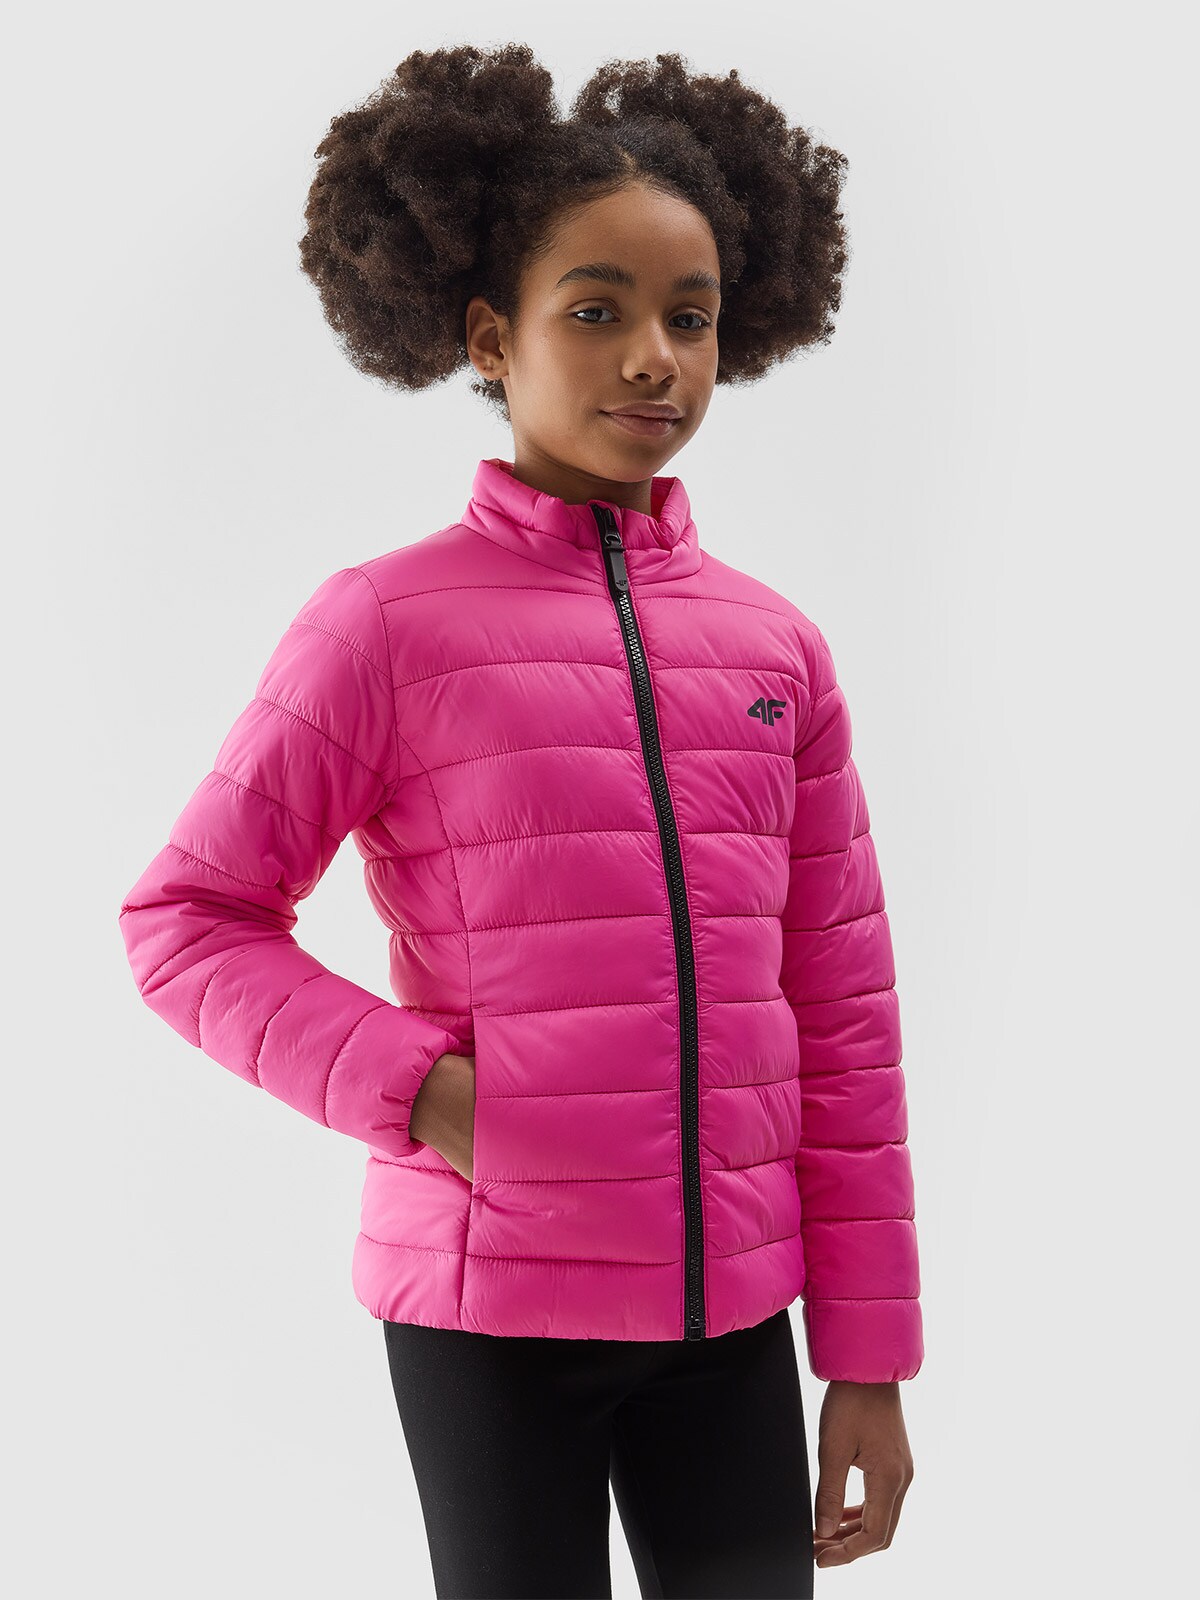 Dievčenská zatepľovacia bunda s recyklovanou výplňou - ružová